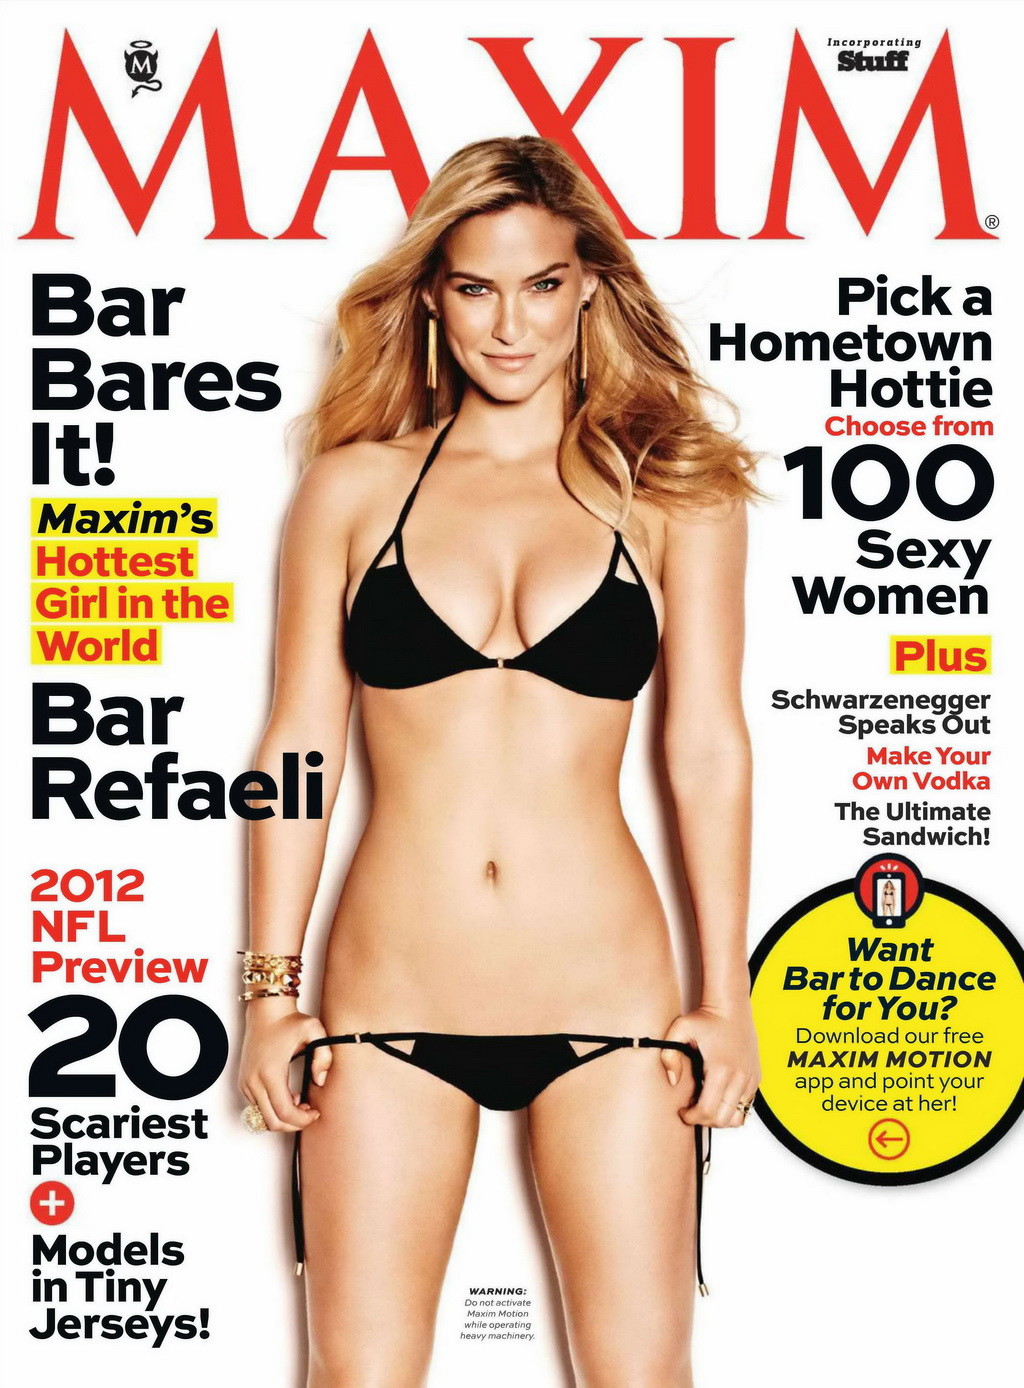 Bar refaeli nackt, aber versteckt in den neuen Ausgaben des Maxim Magazins und von elle france
 #75255501